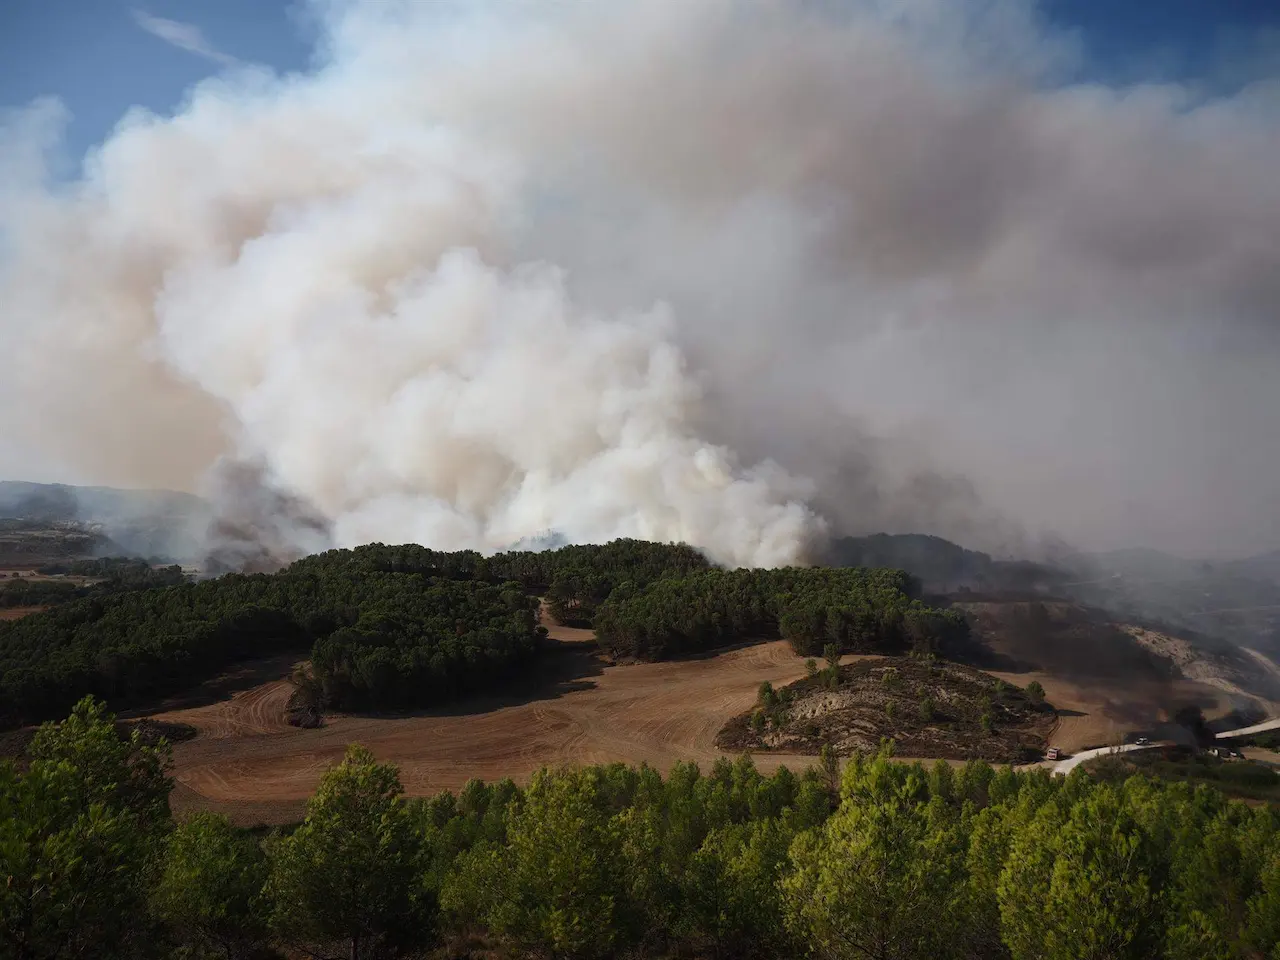 Mejorar protocolos contra incendios y la seguridad de los bomberos. Incendio forestal / Foto: Eduardo Sanz - EP